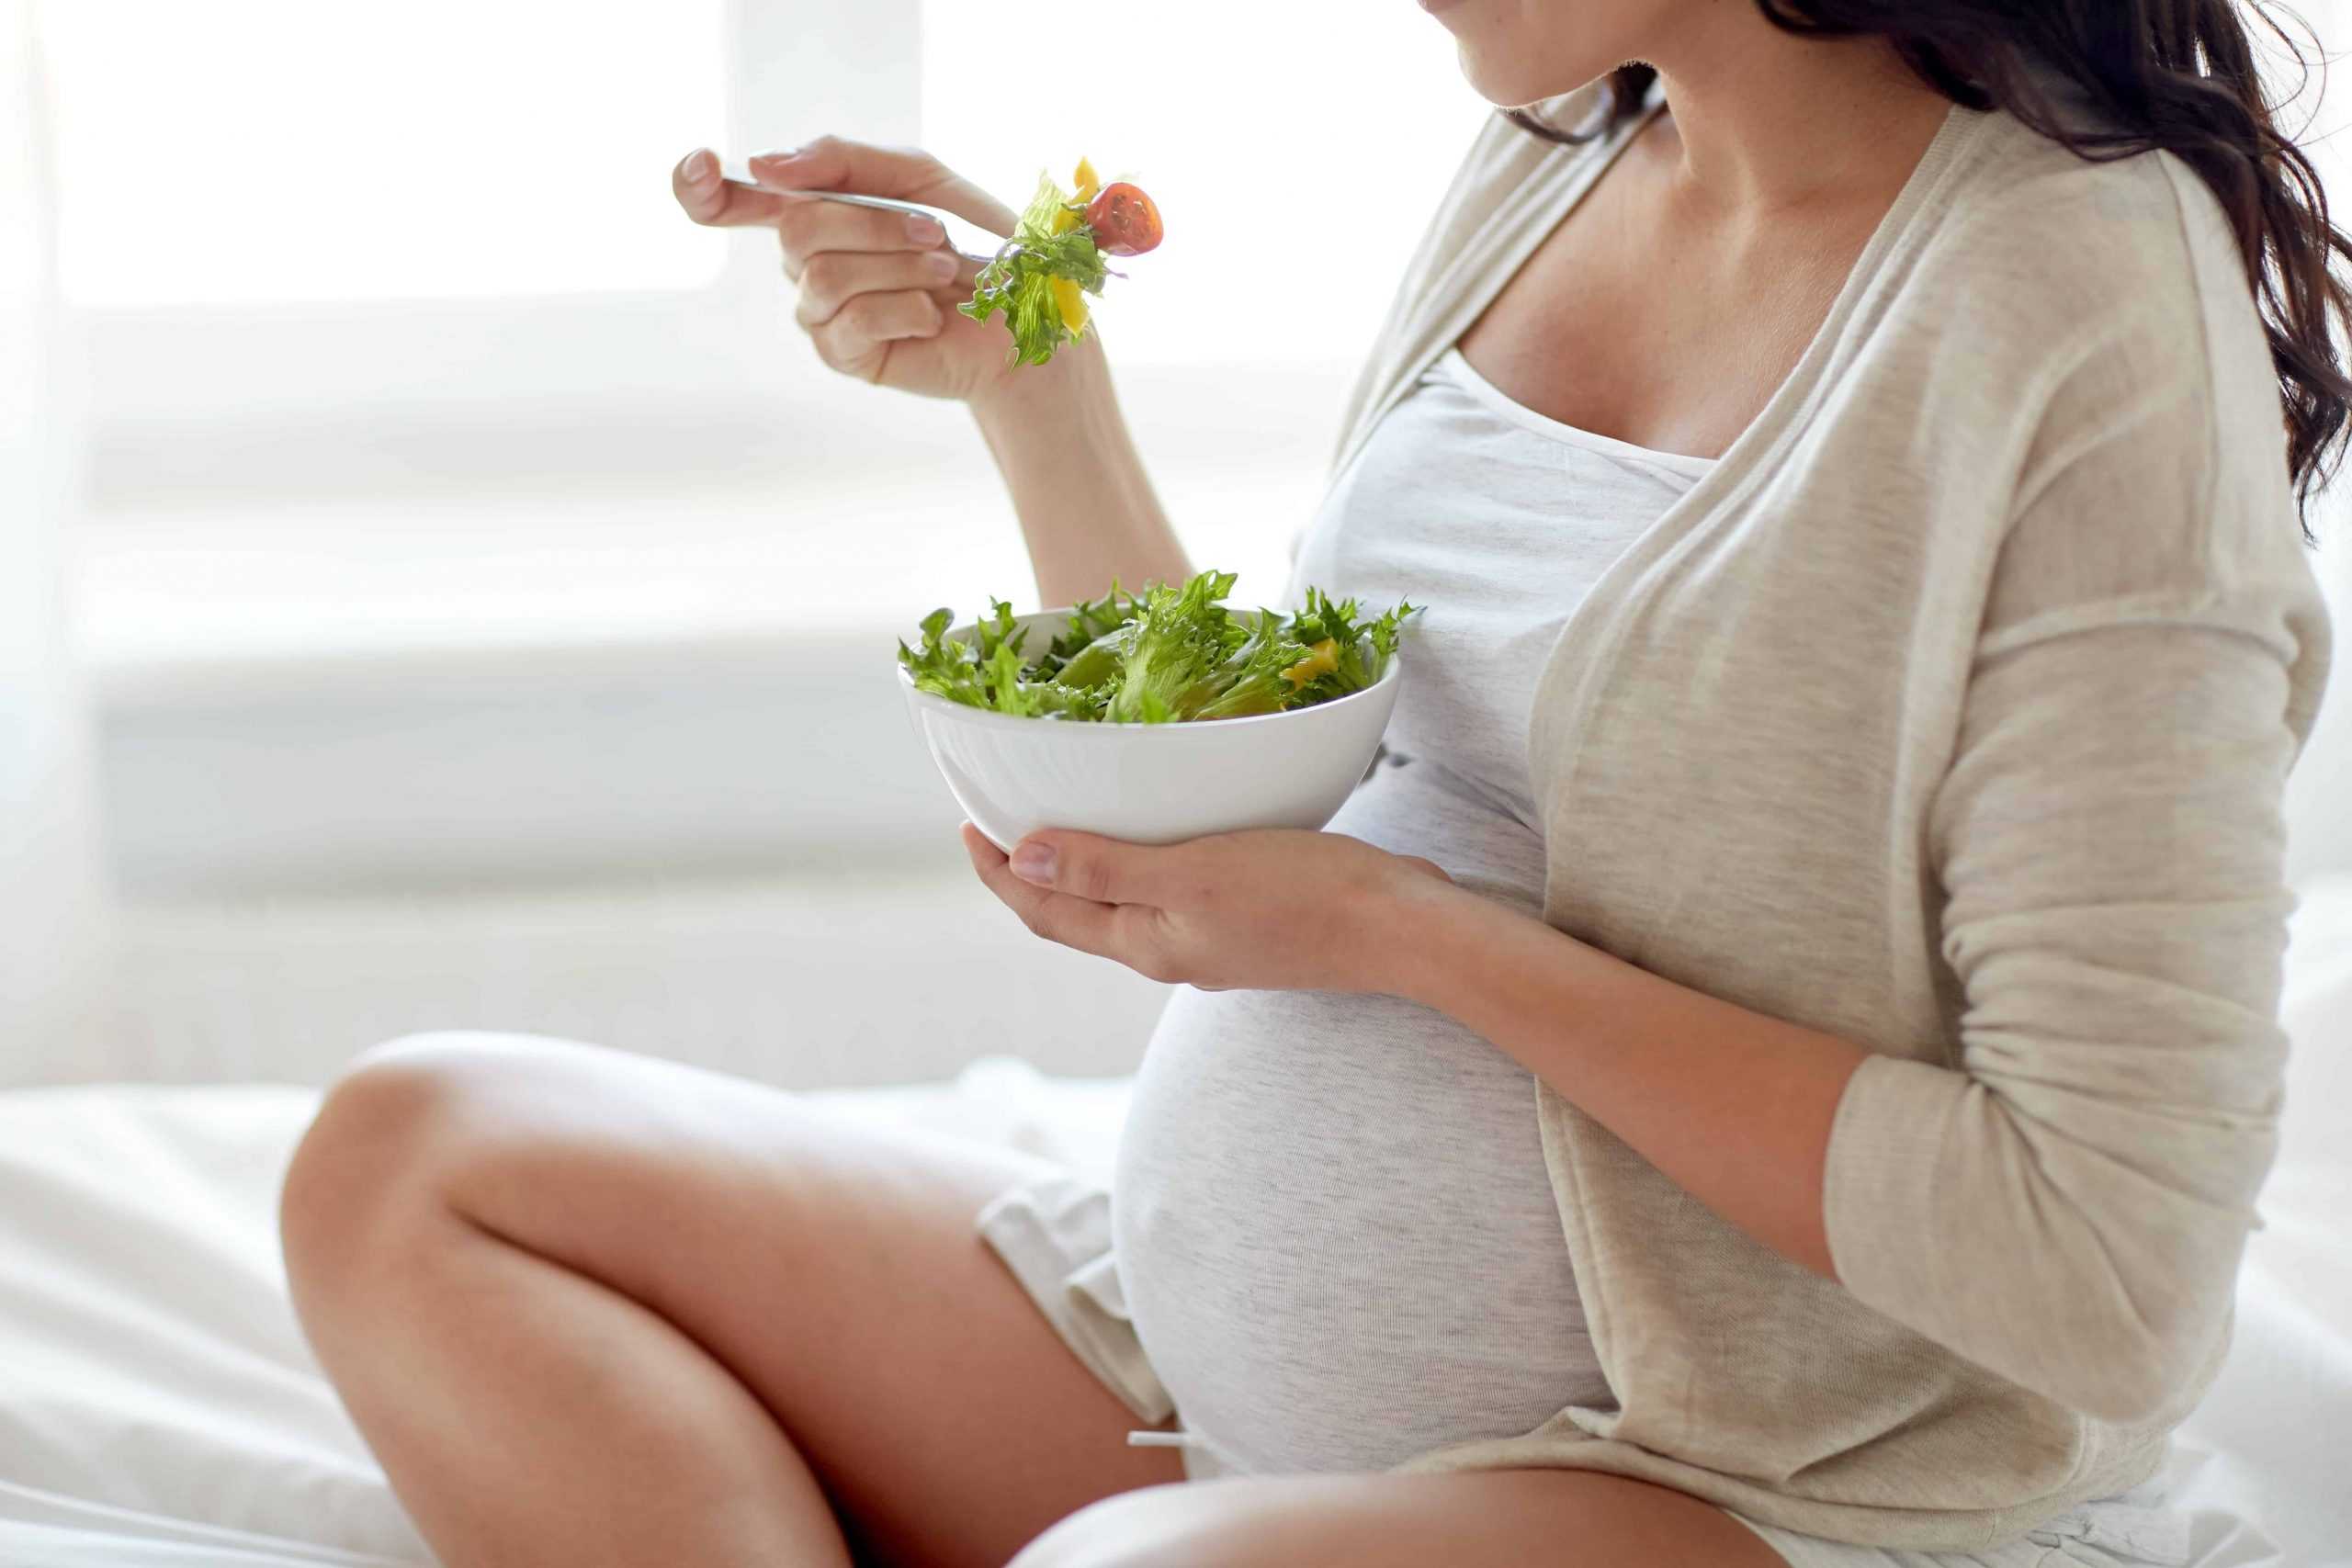 Разнообразить ли меню щавелем при беременности? подробно о пользе и вреде травы, а также сборник рецептов с ней